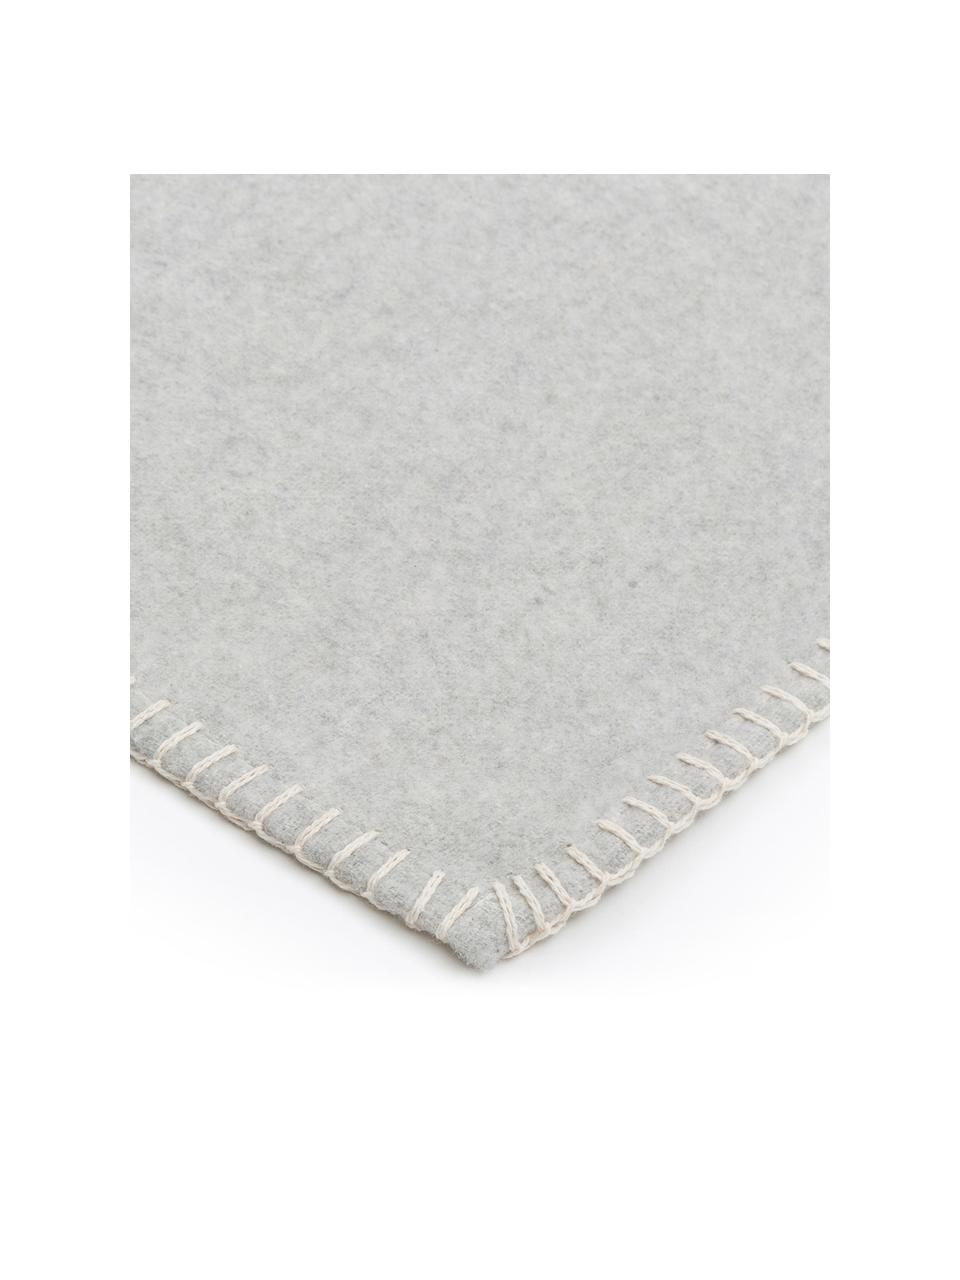 Manta de algodón en tejido polar Sylt, Gris claro, An 140 x L 200 cm